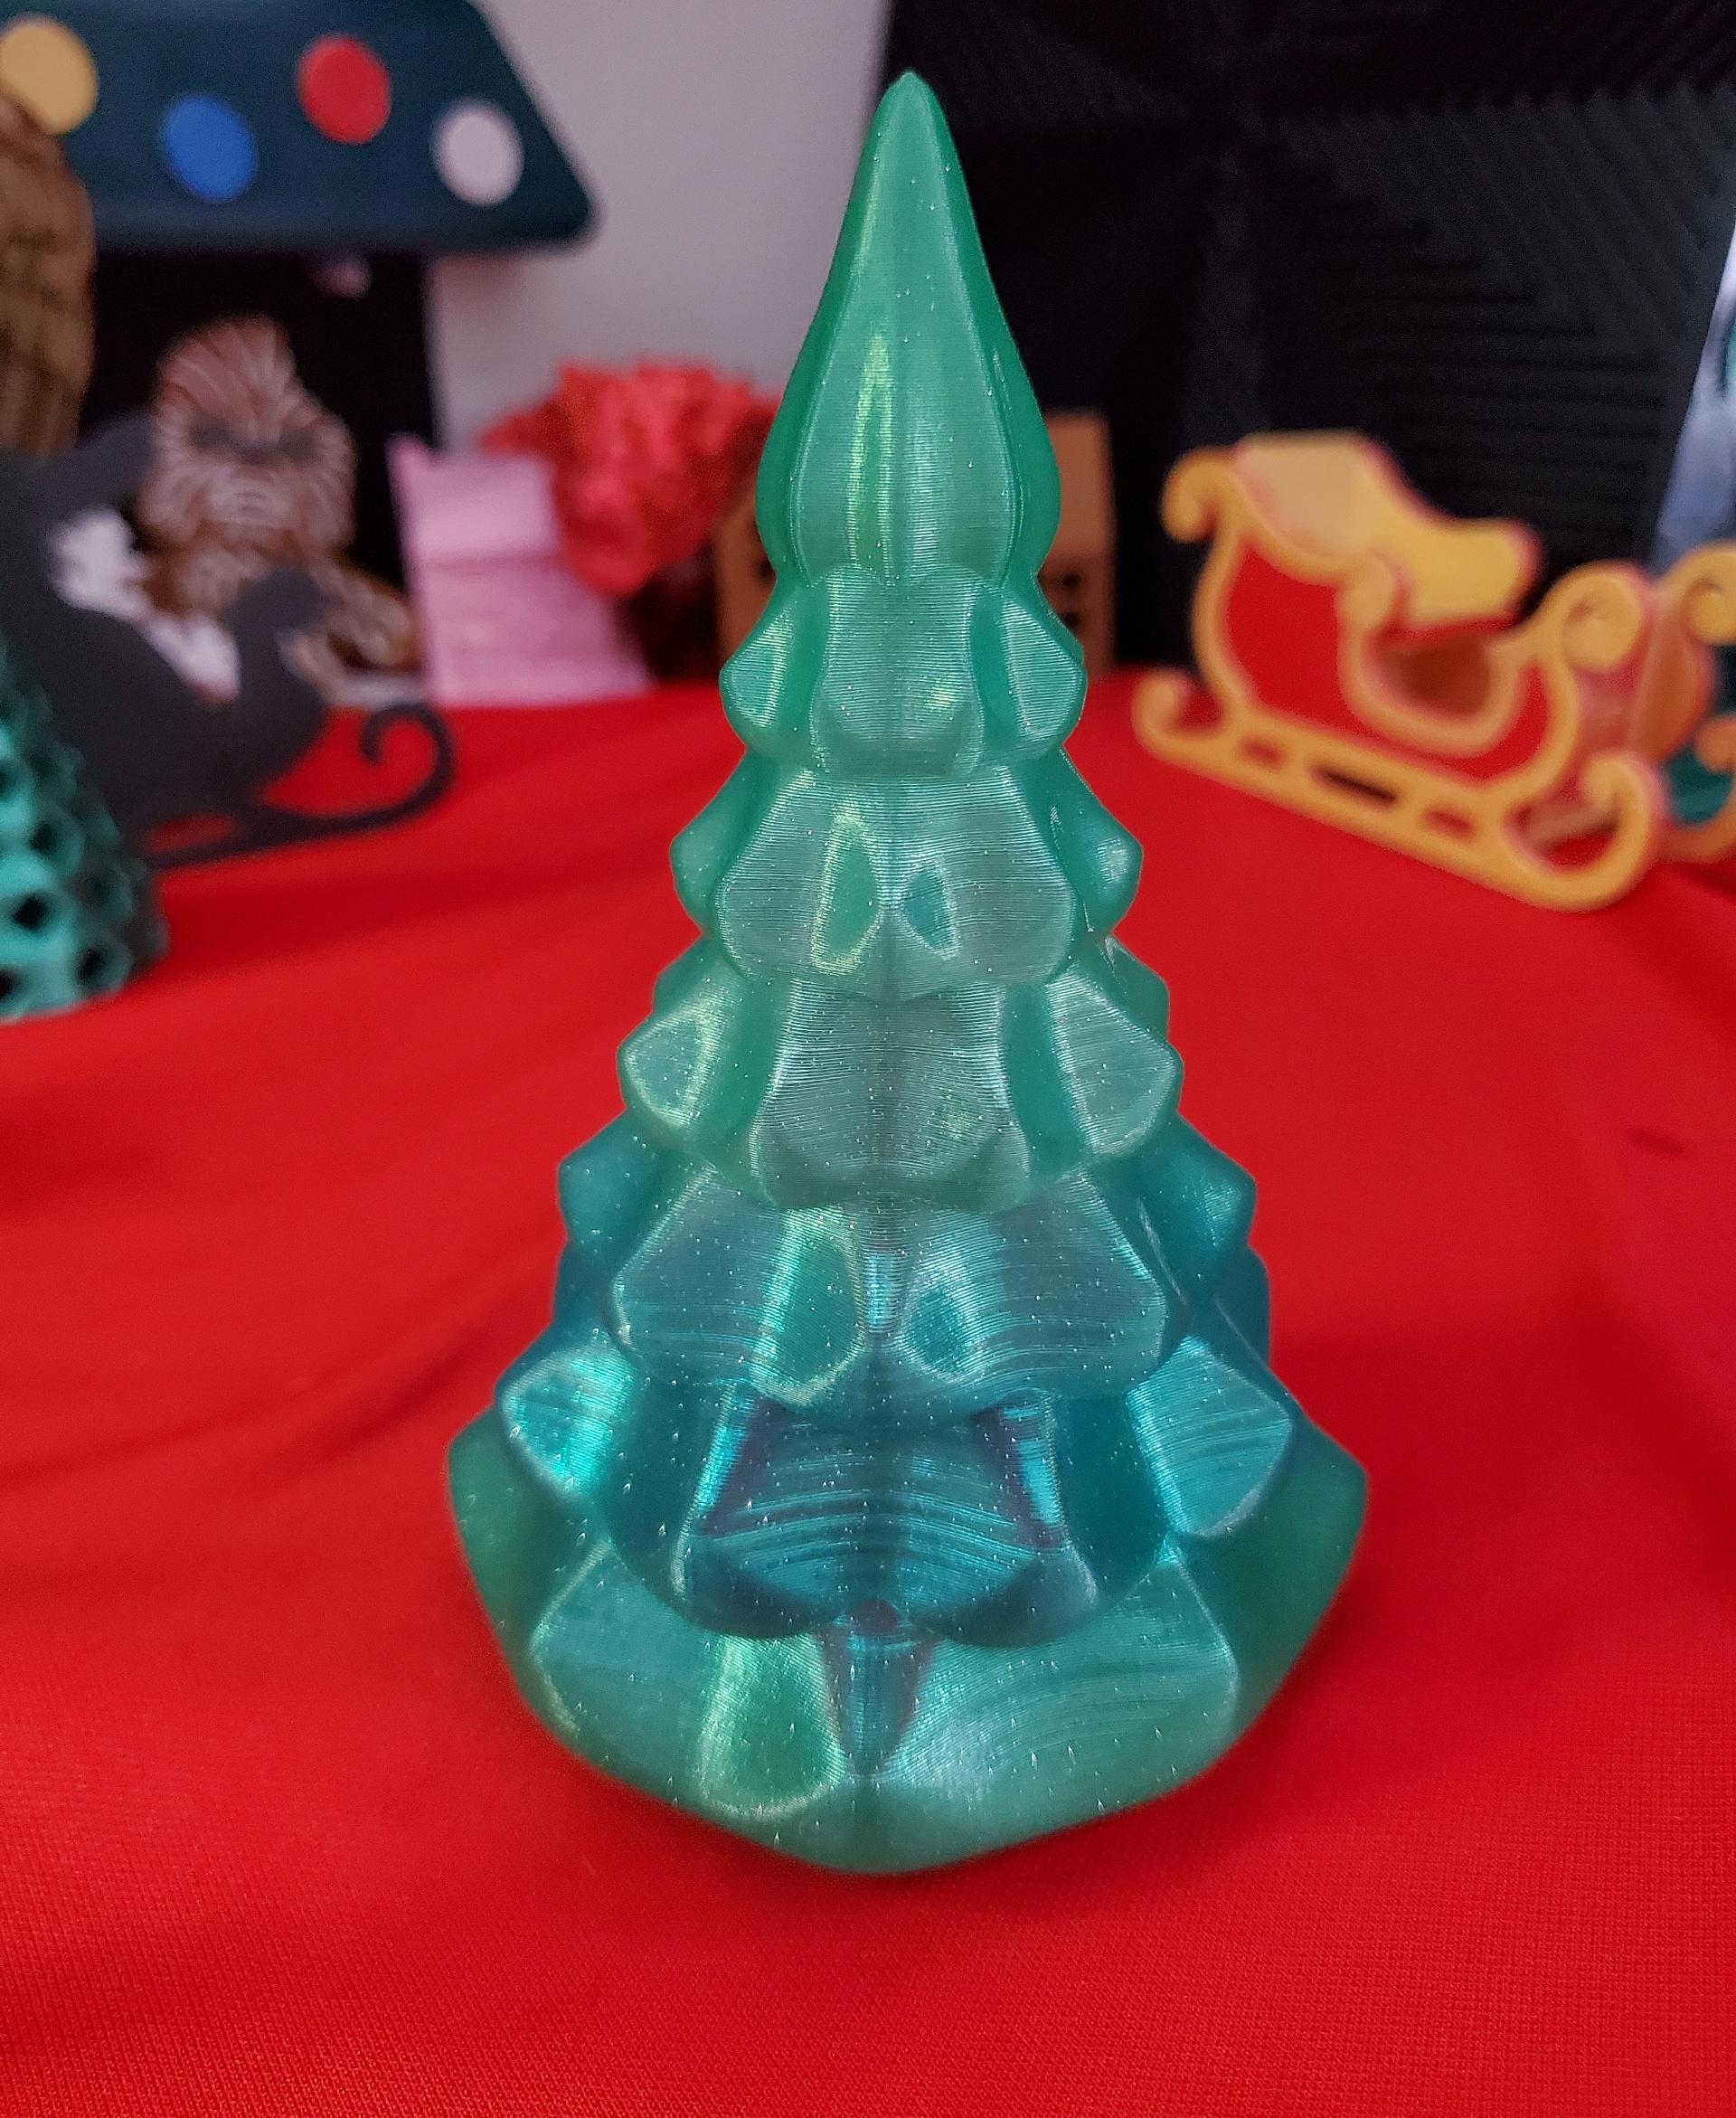 Vase Mode Christmas tree - protopasta forest fantasy green - 3d model